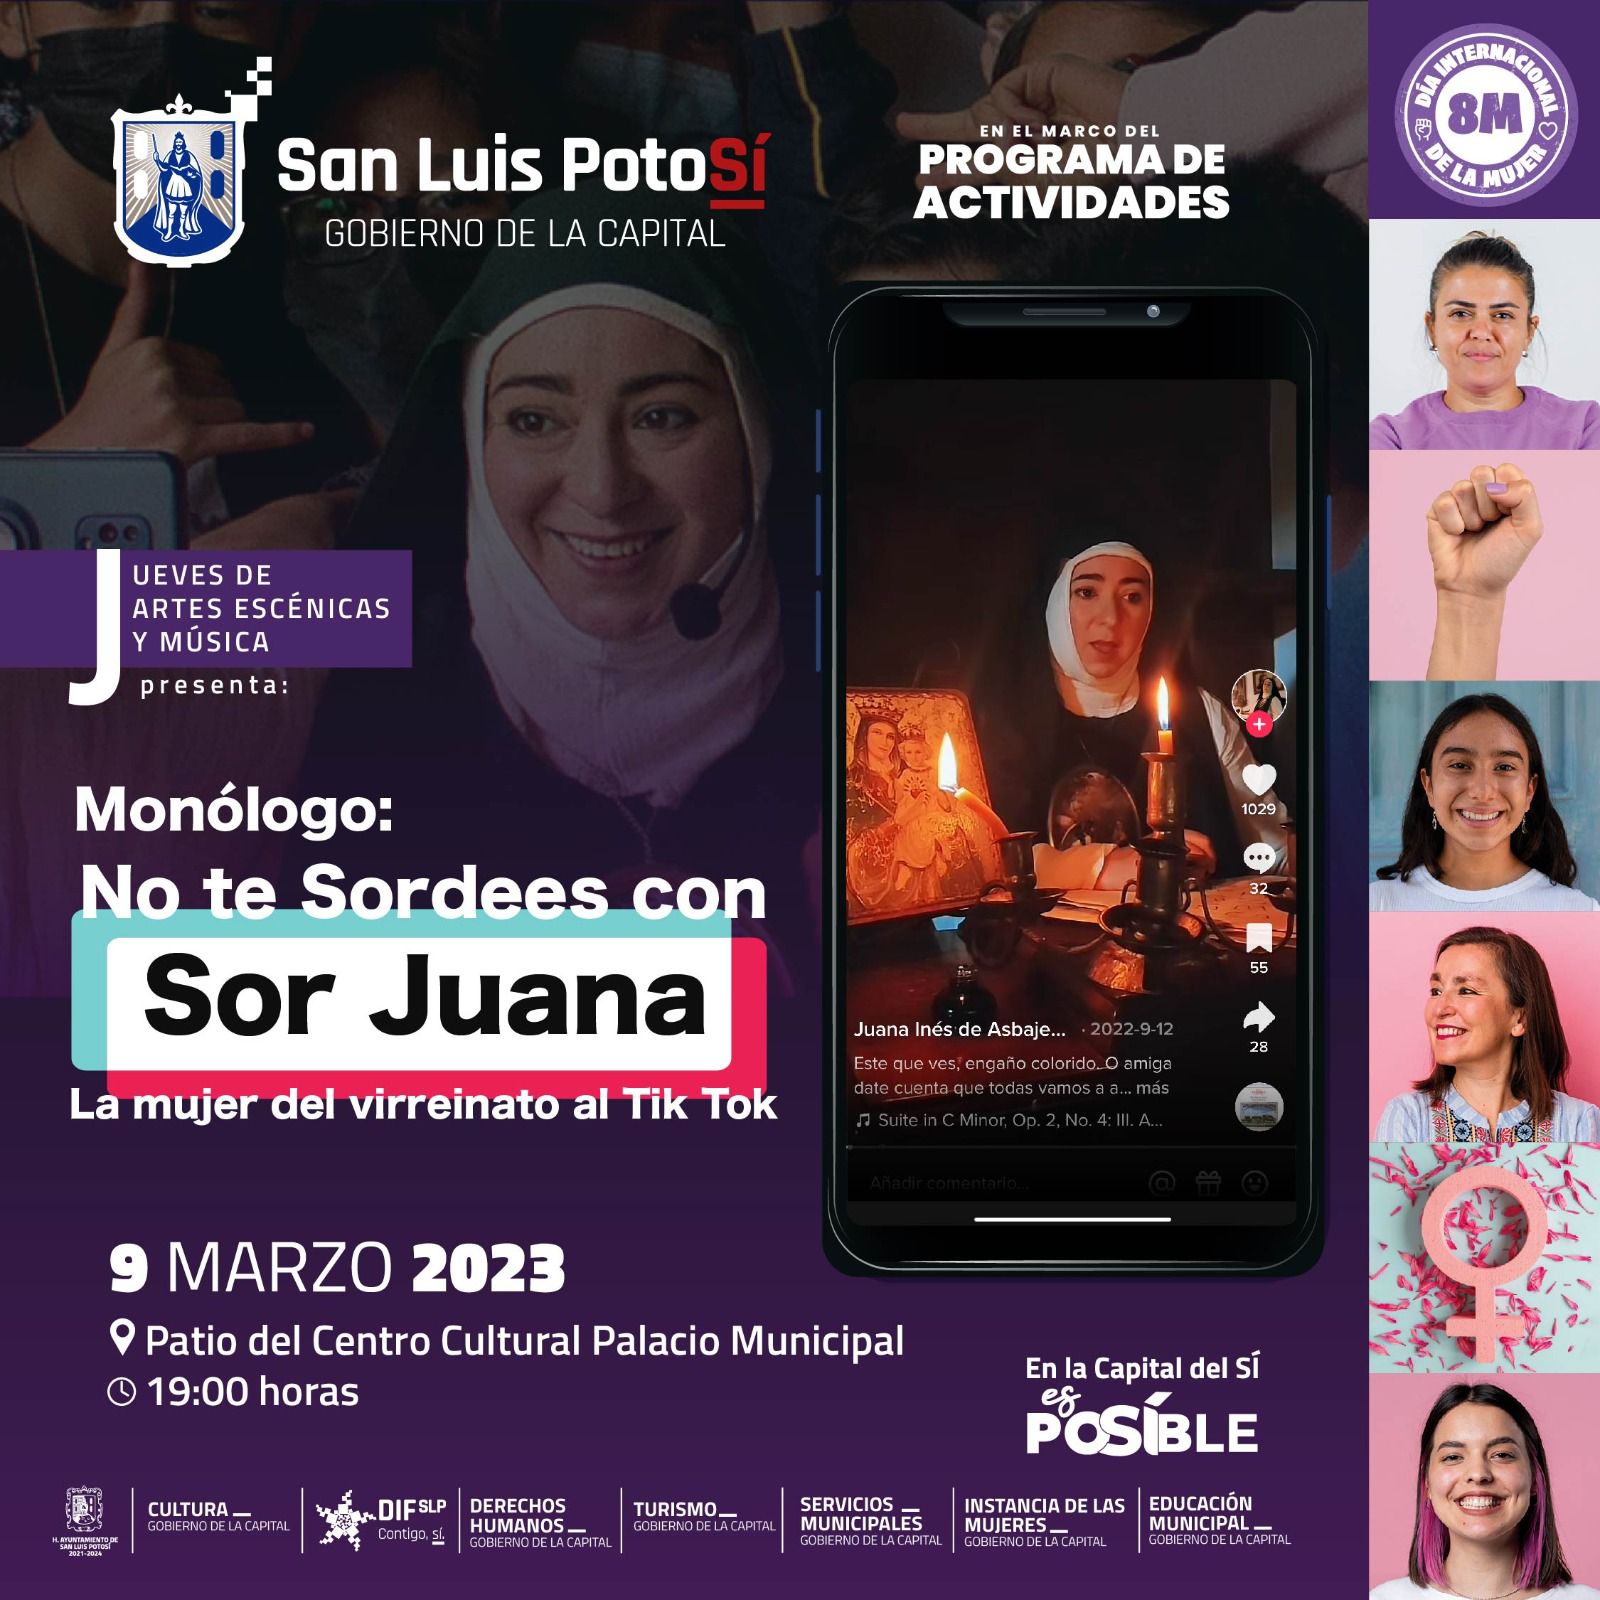  “No te sordees con Sor Juana: la mujer de Virreinato al Tik Tok”, se presenta en Palacio Municipal en el marco del 8M